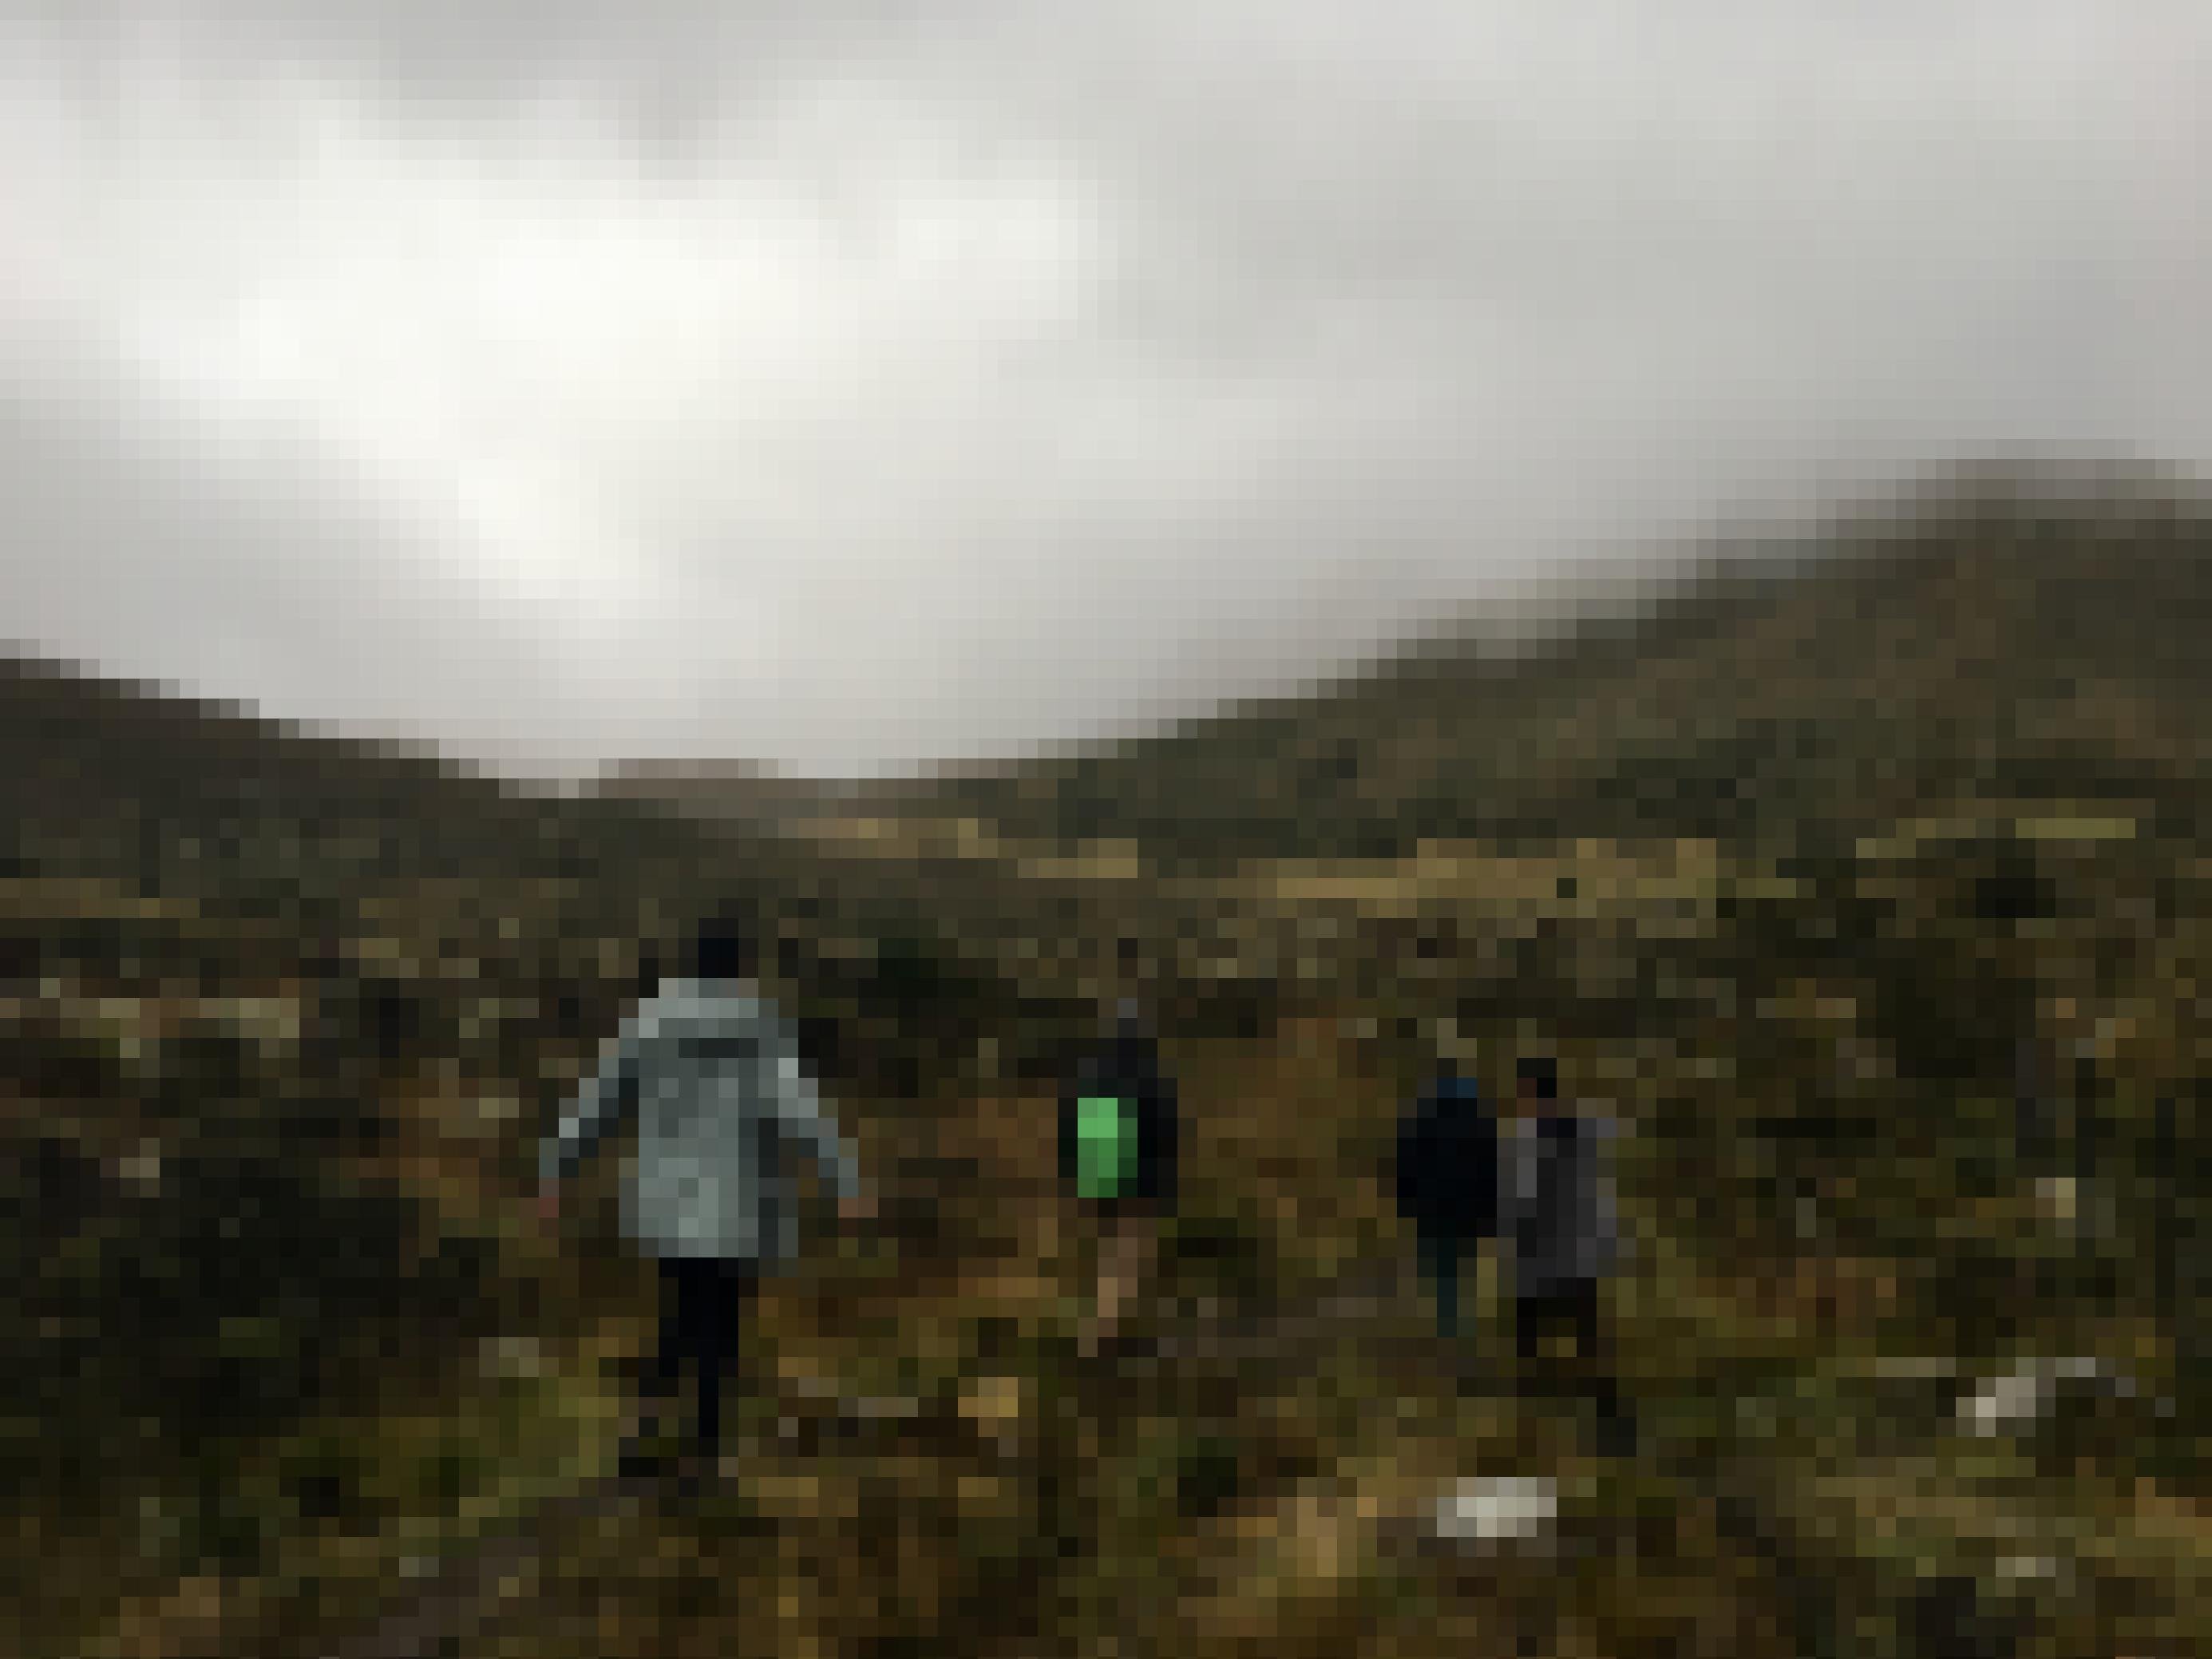 Vier junge Menschen in dicken Jacken, eine Person davon mit kleinem Rücksack, gehen durch eine moorartige Berglandschaft. Die Gipfel verhüllt Nebel.